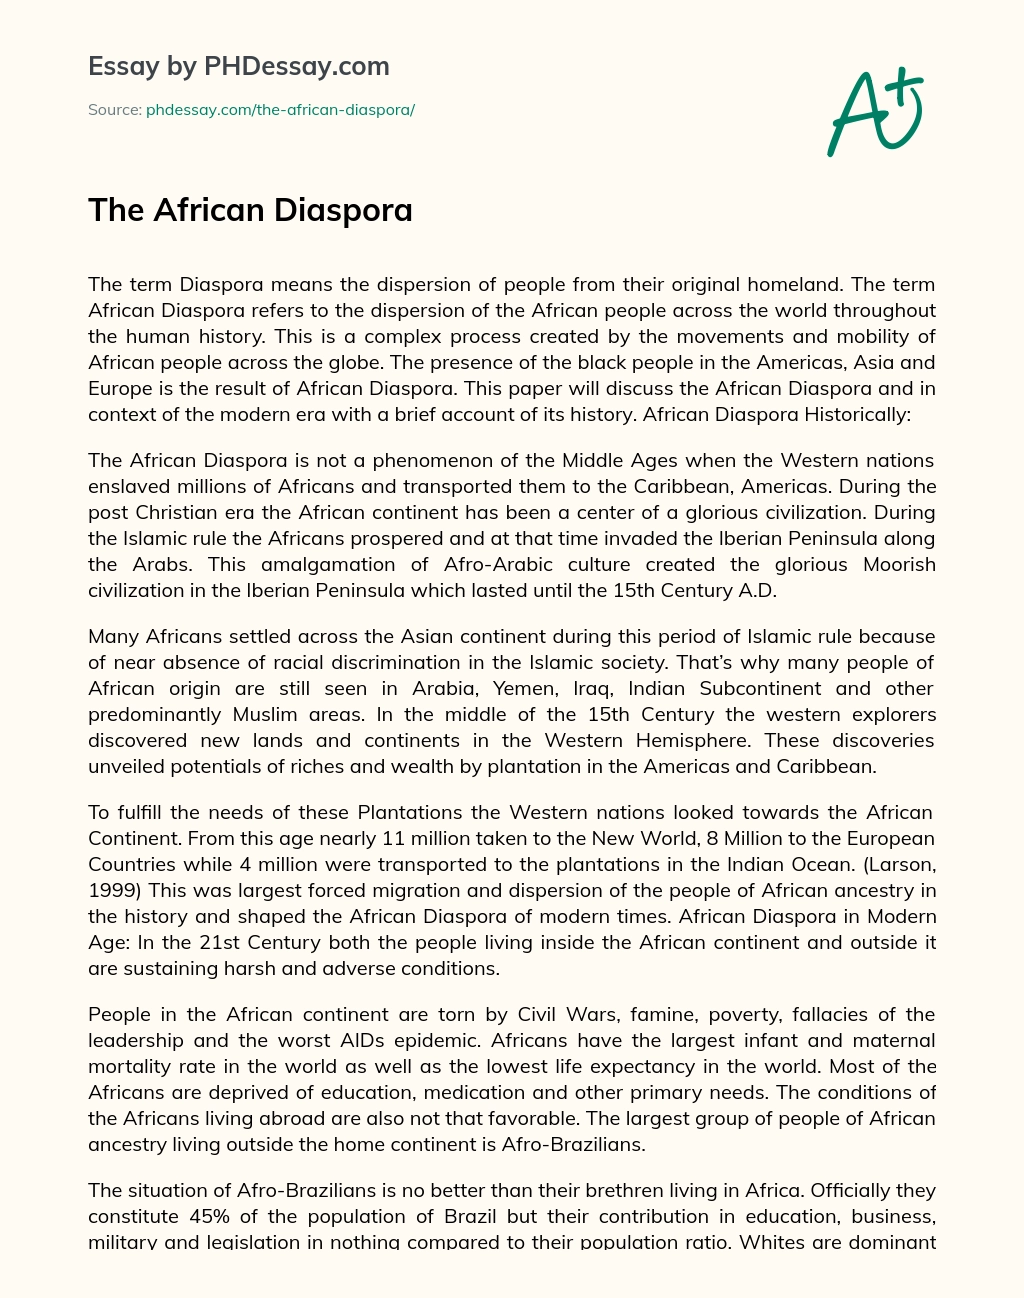 The African Diaspora essay